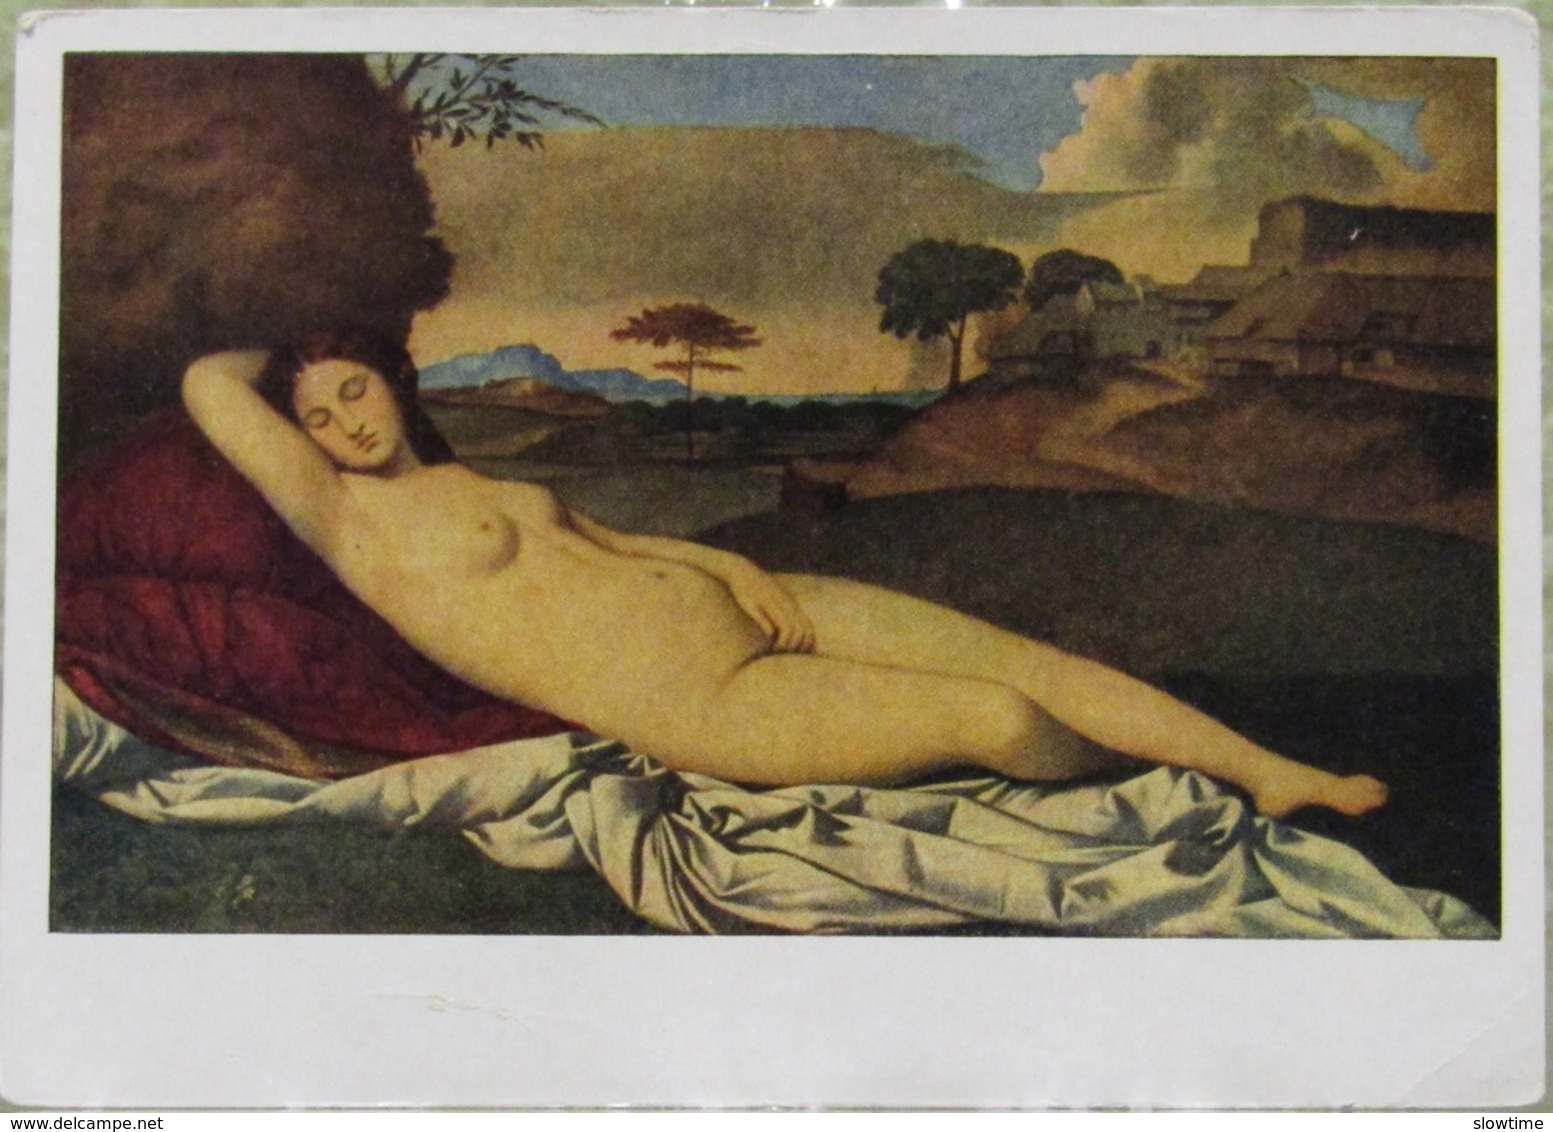 Giorgione Sleeping Venus Italian School Of Painting Old USSR Postcard 1956 - Malerei & Gemälde